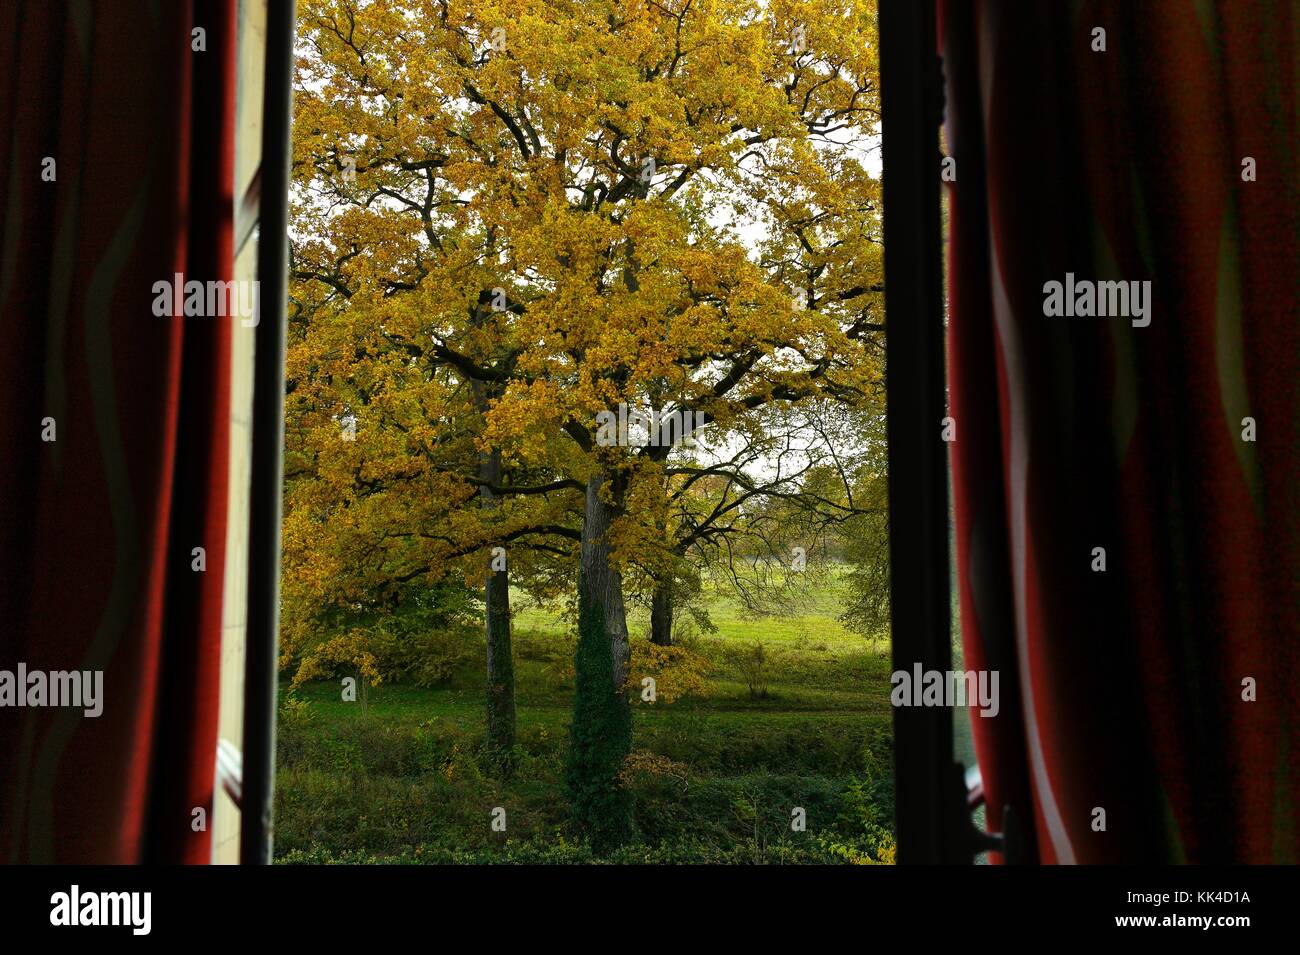 Le rideau de l'automne - 01/11/2010 - - Couleurs d'or, le chêne à l'automne. burgundi. - Sylvain leser / le pictorium Banque D'Images